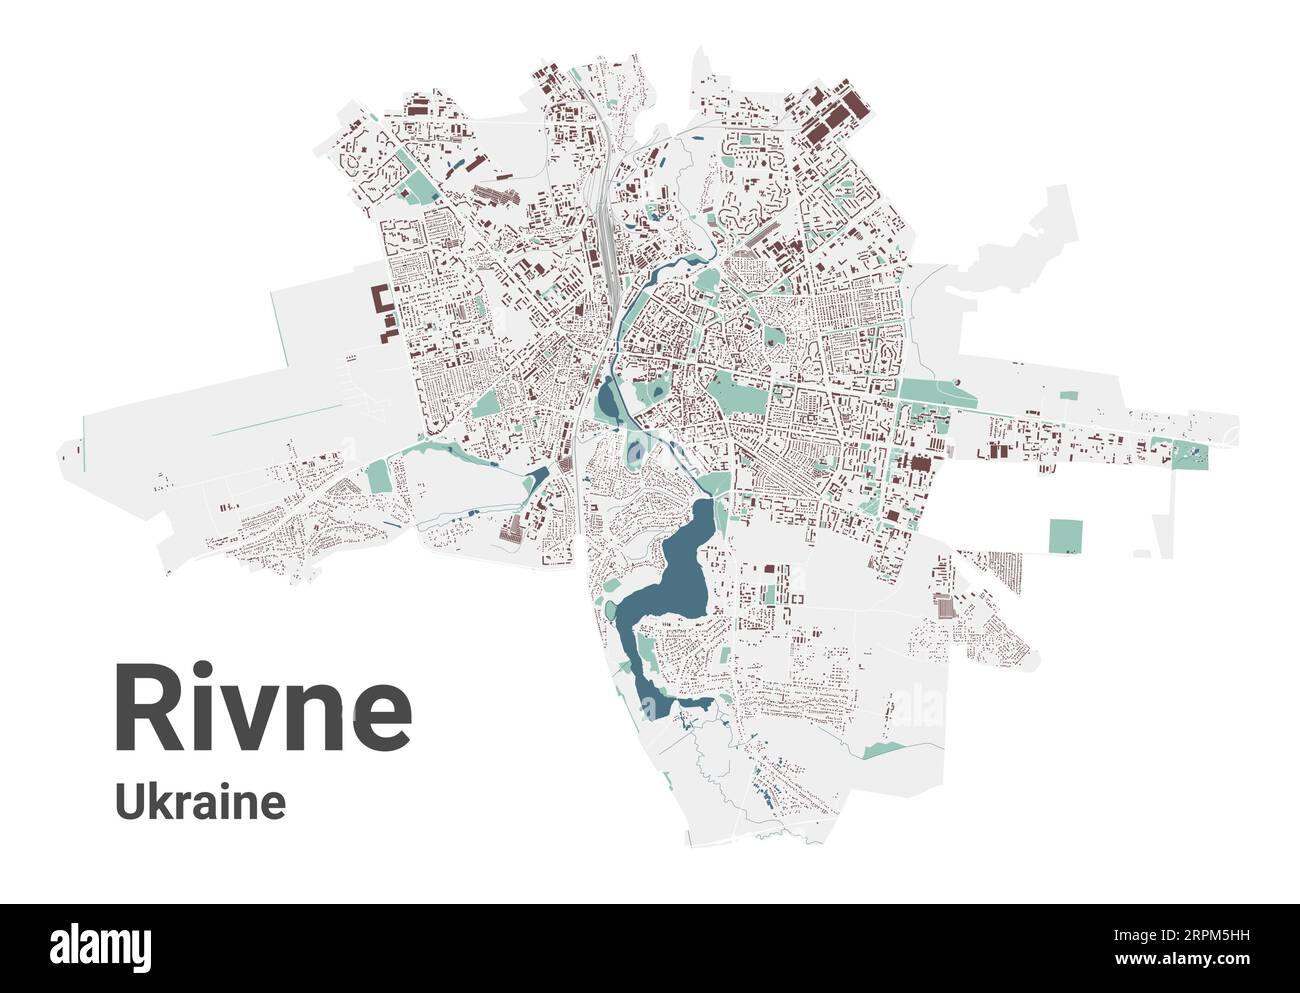 Rivne Karte, Stadt in der Ukraine. Stadtplan mit Gebäuden, Flüssen und Straßen, Parks und Eisenbahnen. Vektorillustration. Stock Vektor